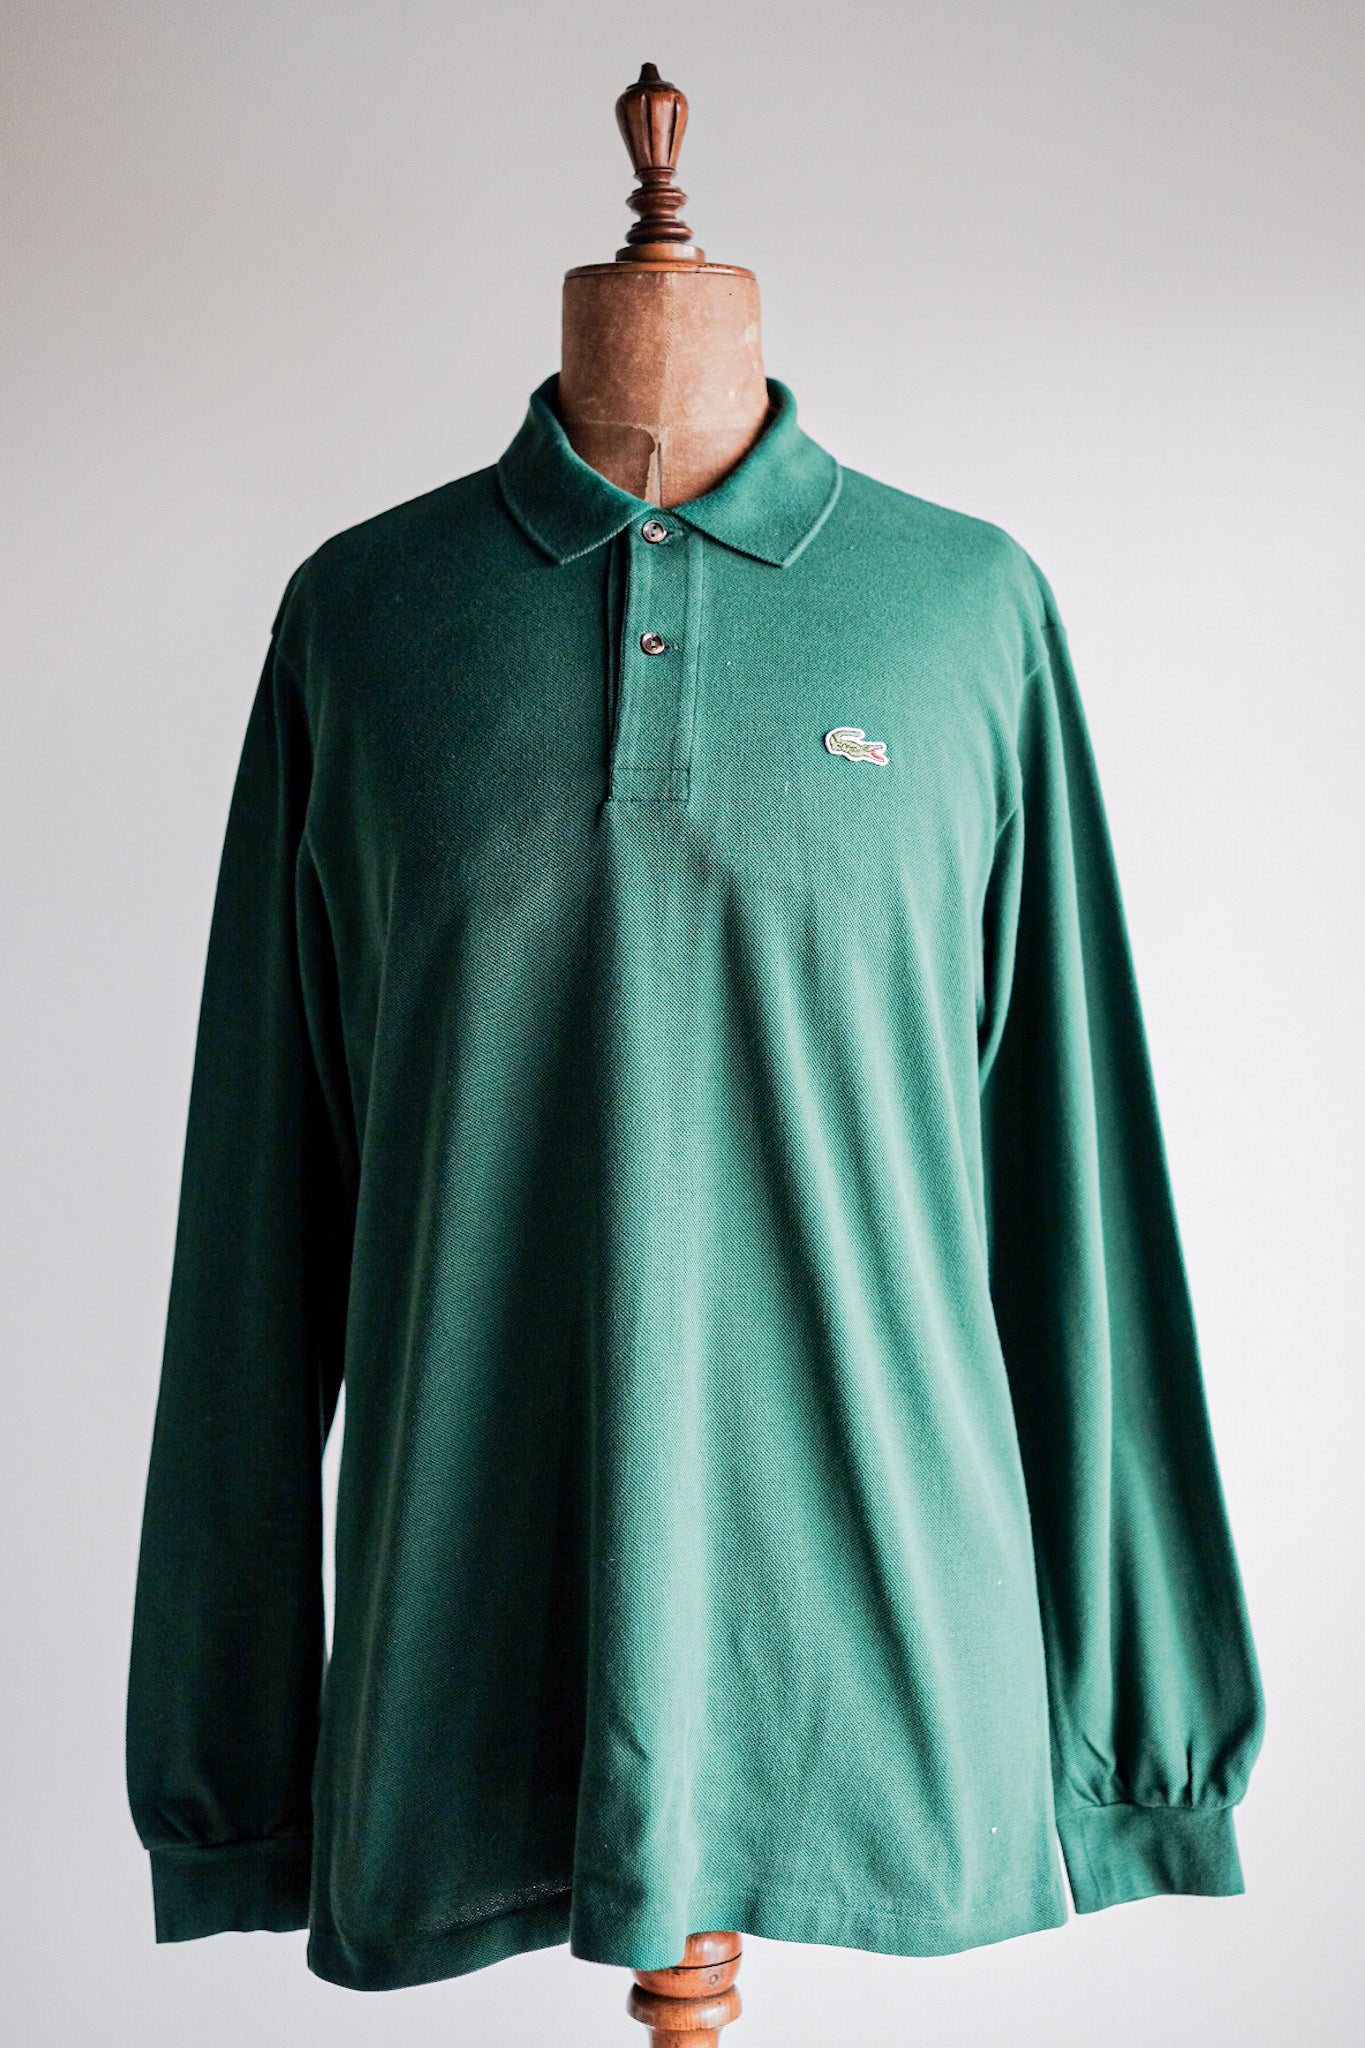 [~ 80 년대] Chemise lacoste l/s 폴로 셔츠 크기 .5 "Forest Green"